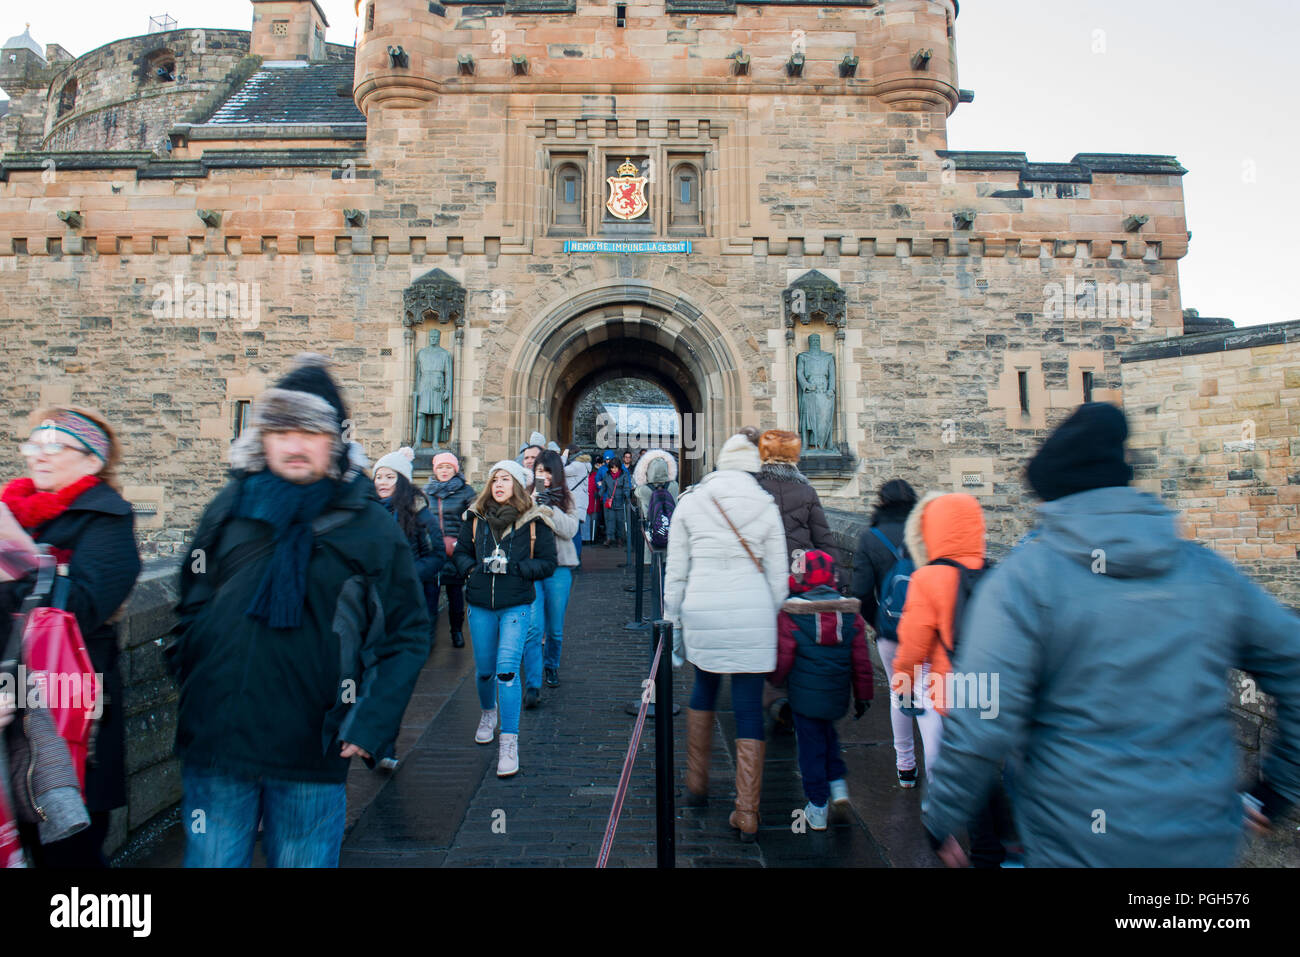 Allgemeine Aufnahmen von Touristen in Edinburgh Castle Esplanade für Geschichte auf Besucherzahlen, Tourismus Stockfoto